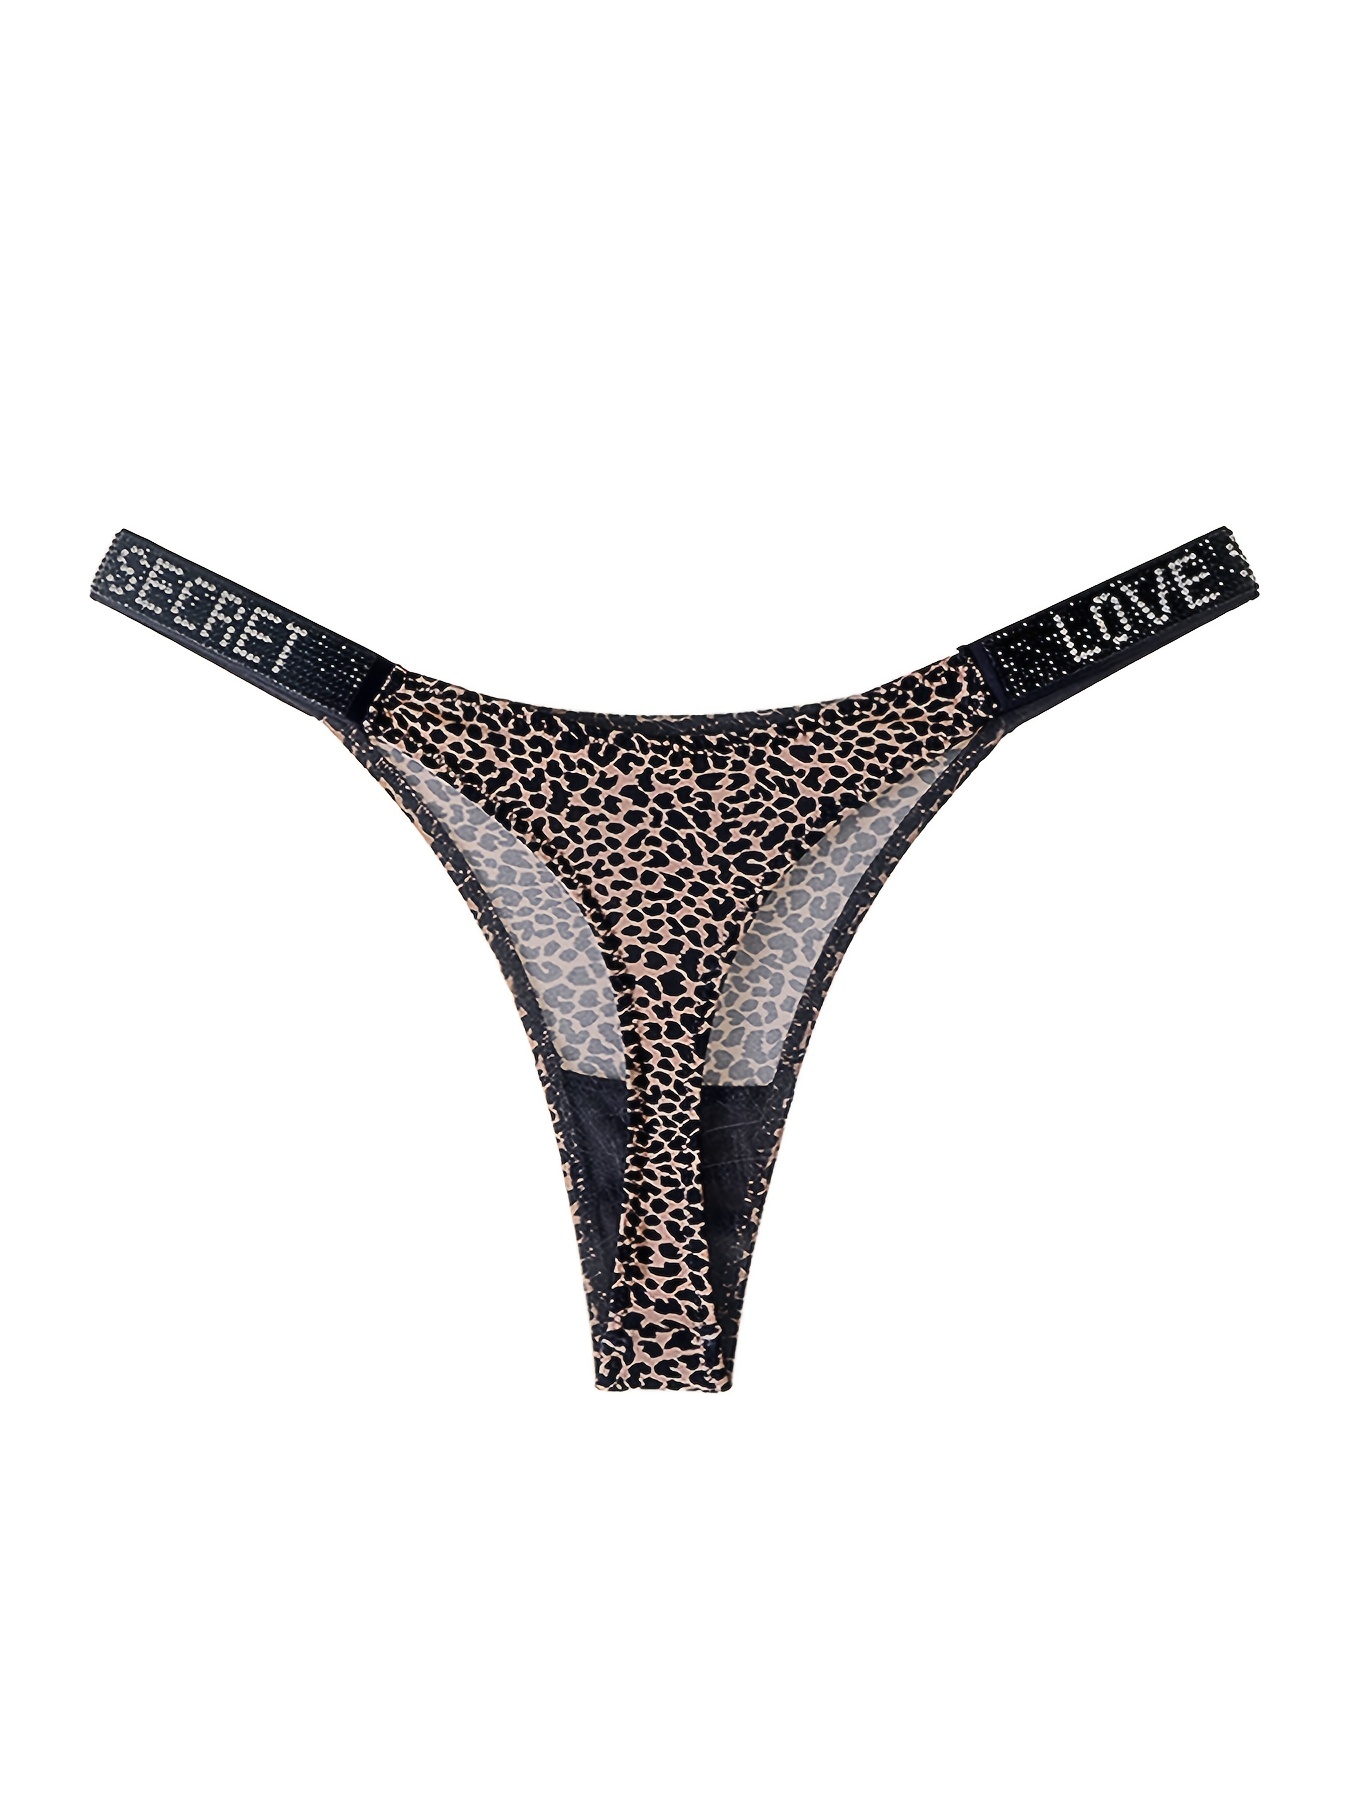 Cotton G String Leopard Women Panties Sexy Briefs Thong Low Waist